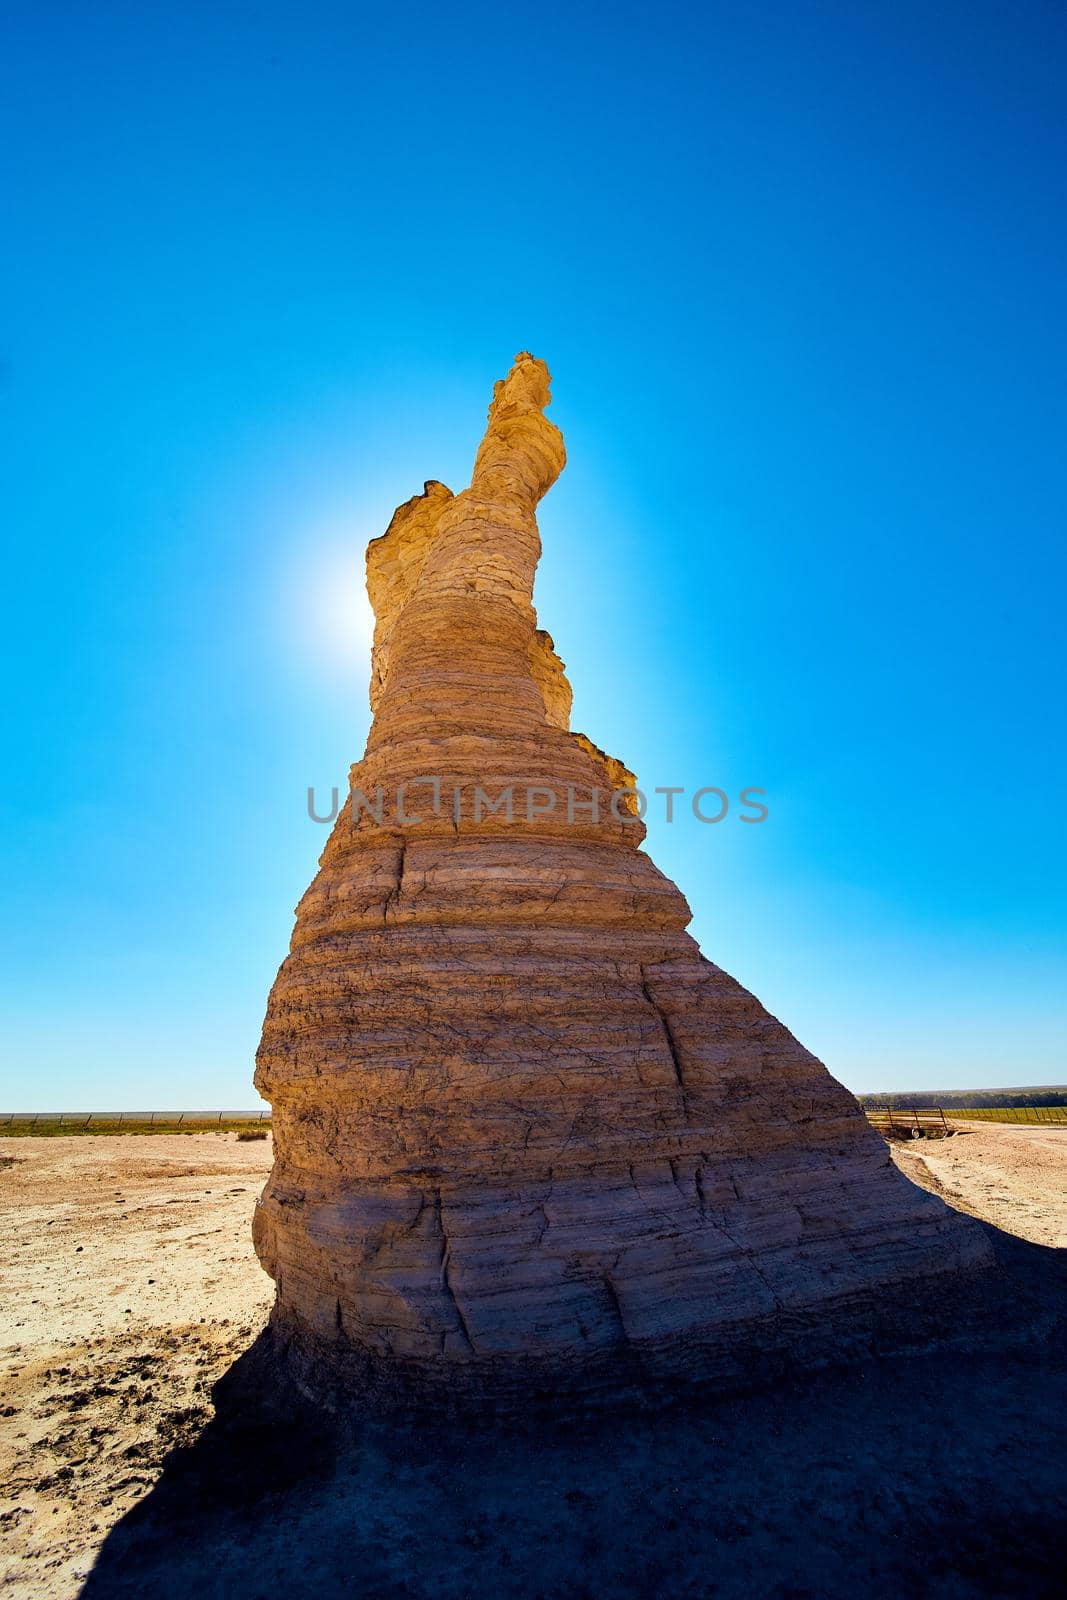 Image of Pillar of white rock blocking sun in desert against blue sky